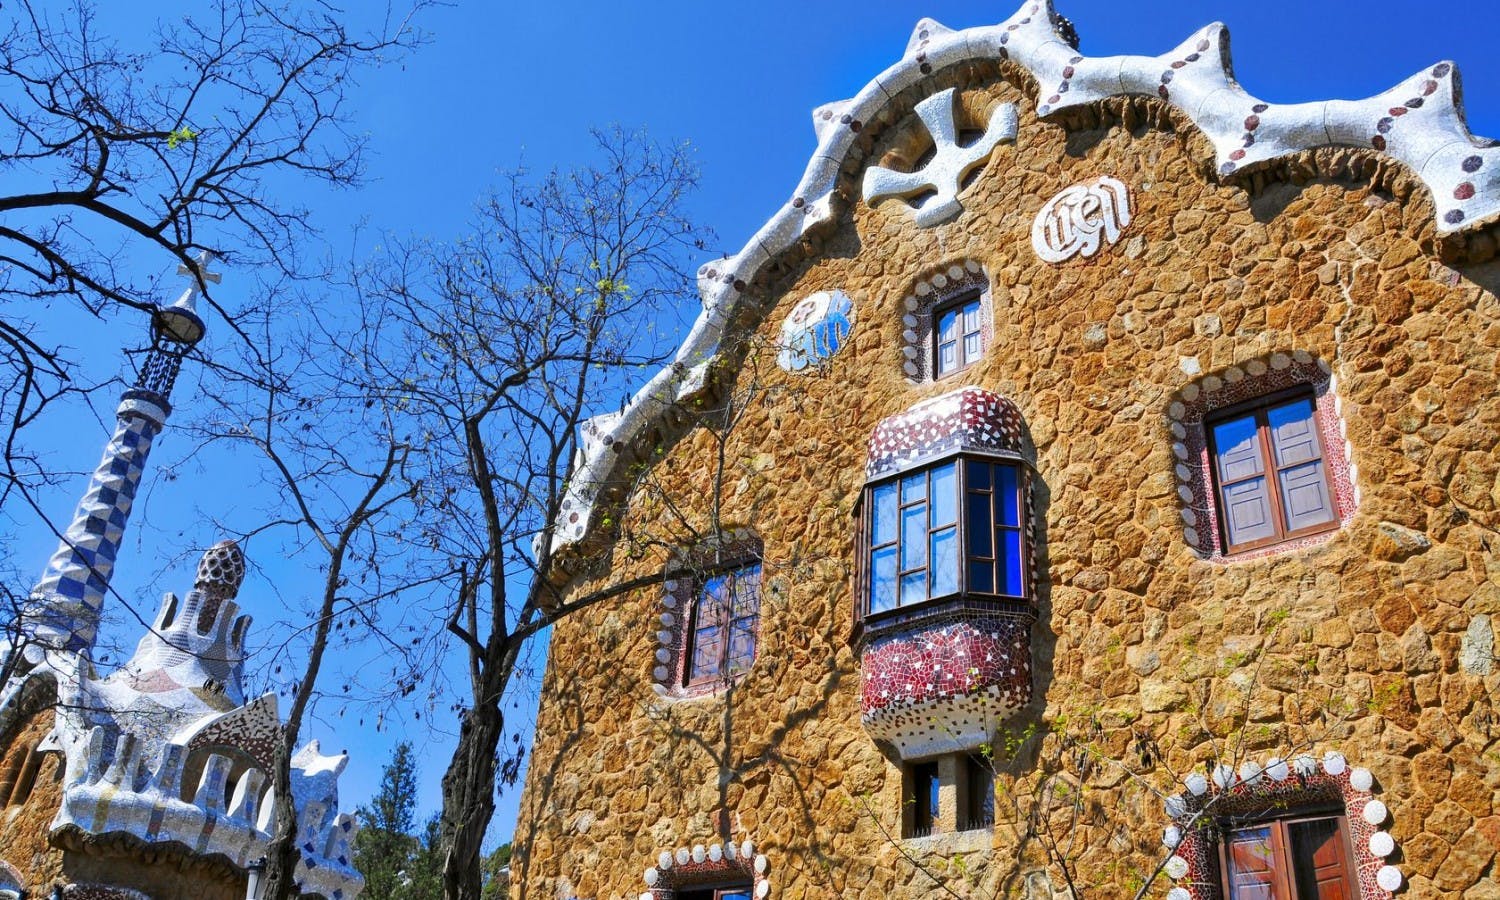 Park Güell i poranna wycieczka po Sagrada Familia